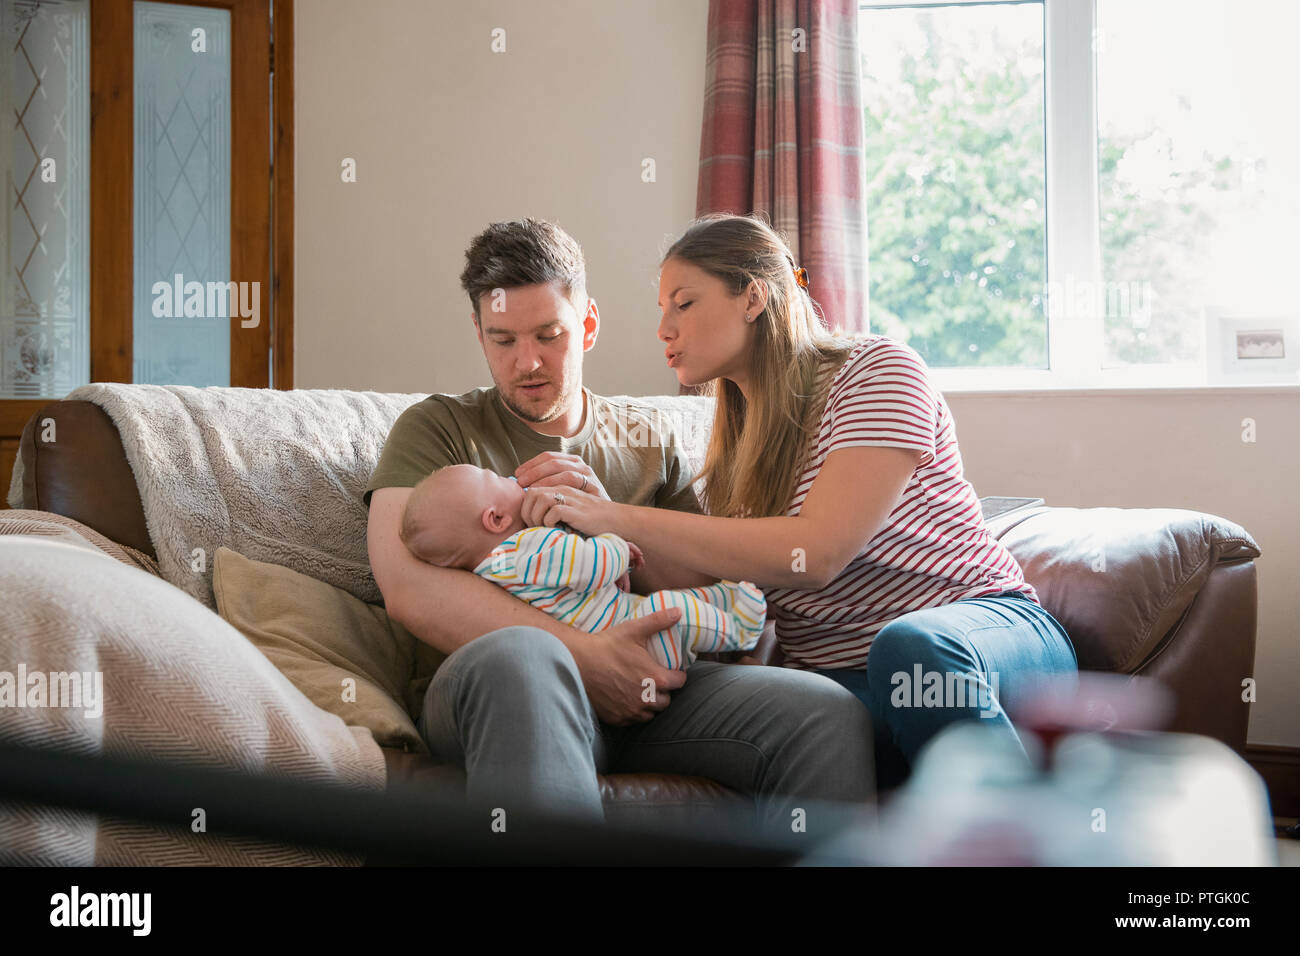 Der Mann und die Frau sitzt auf einem Sofa im Wohnzimmer mit Ihrem neugeborenen Baby. Der Mann hält das Baby und seine Frau versucht, das Baby zu erhalten Stockfoto